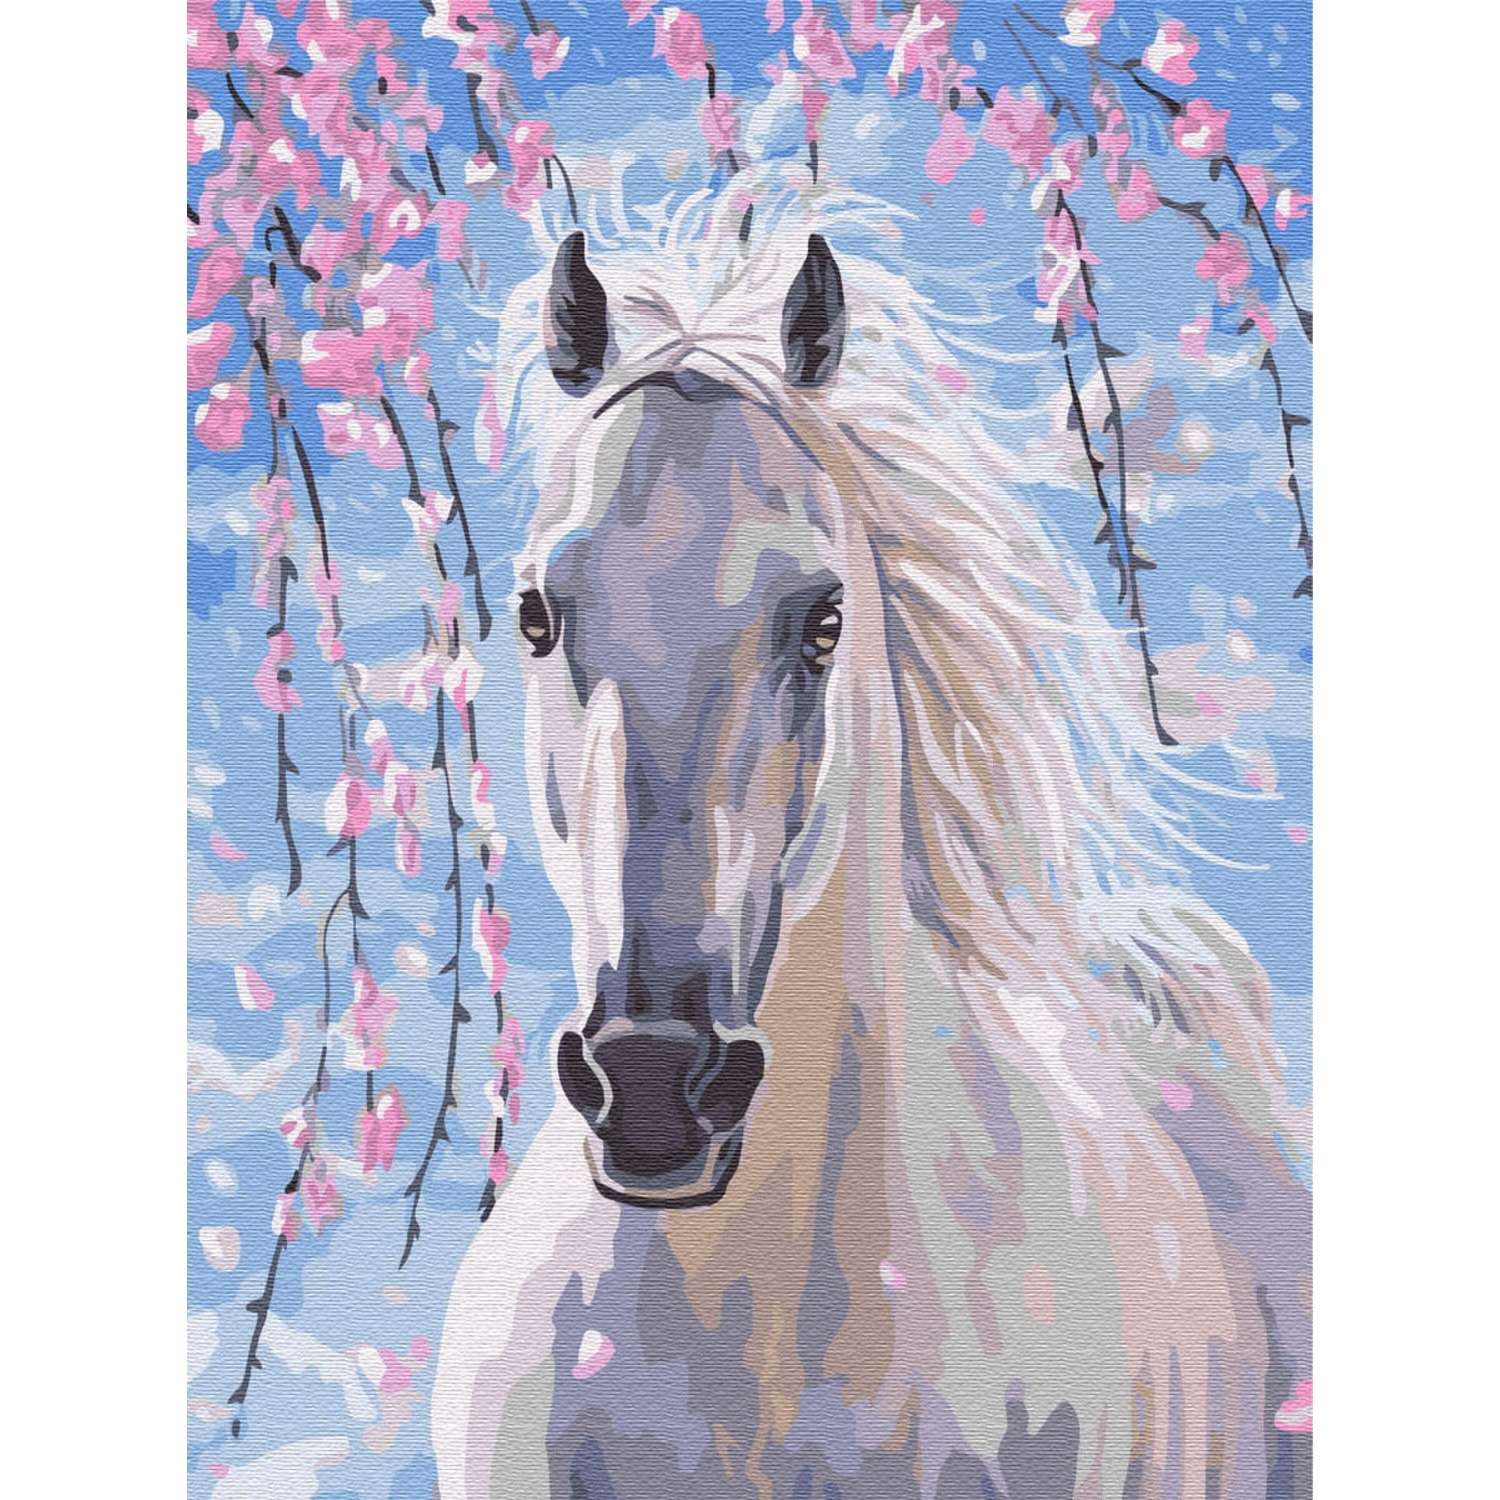 Картина по номерам Цветной Белогривая лошадка 30x40 см - фото 1